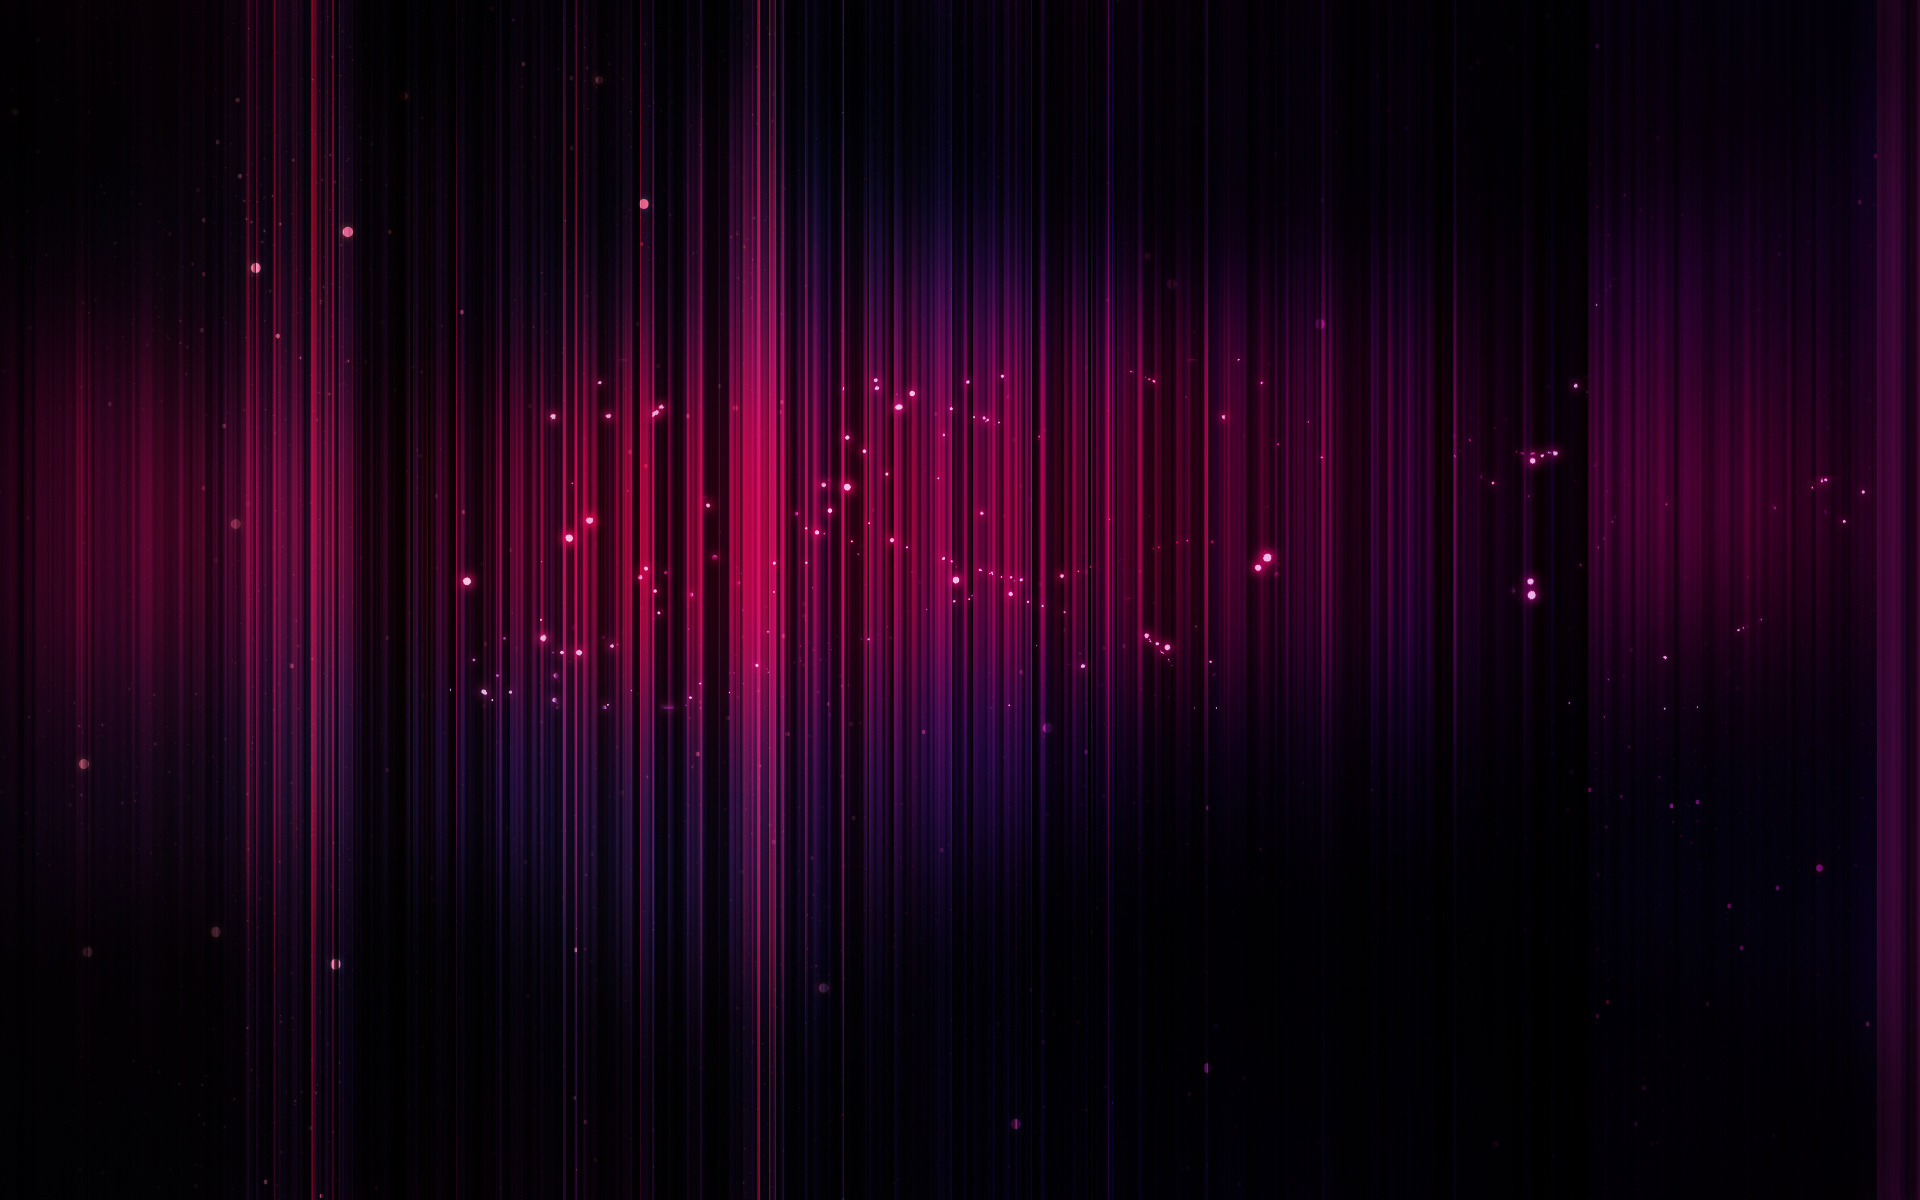  HD  Purple  Wallpapers  PixelsTalk Net